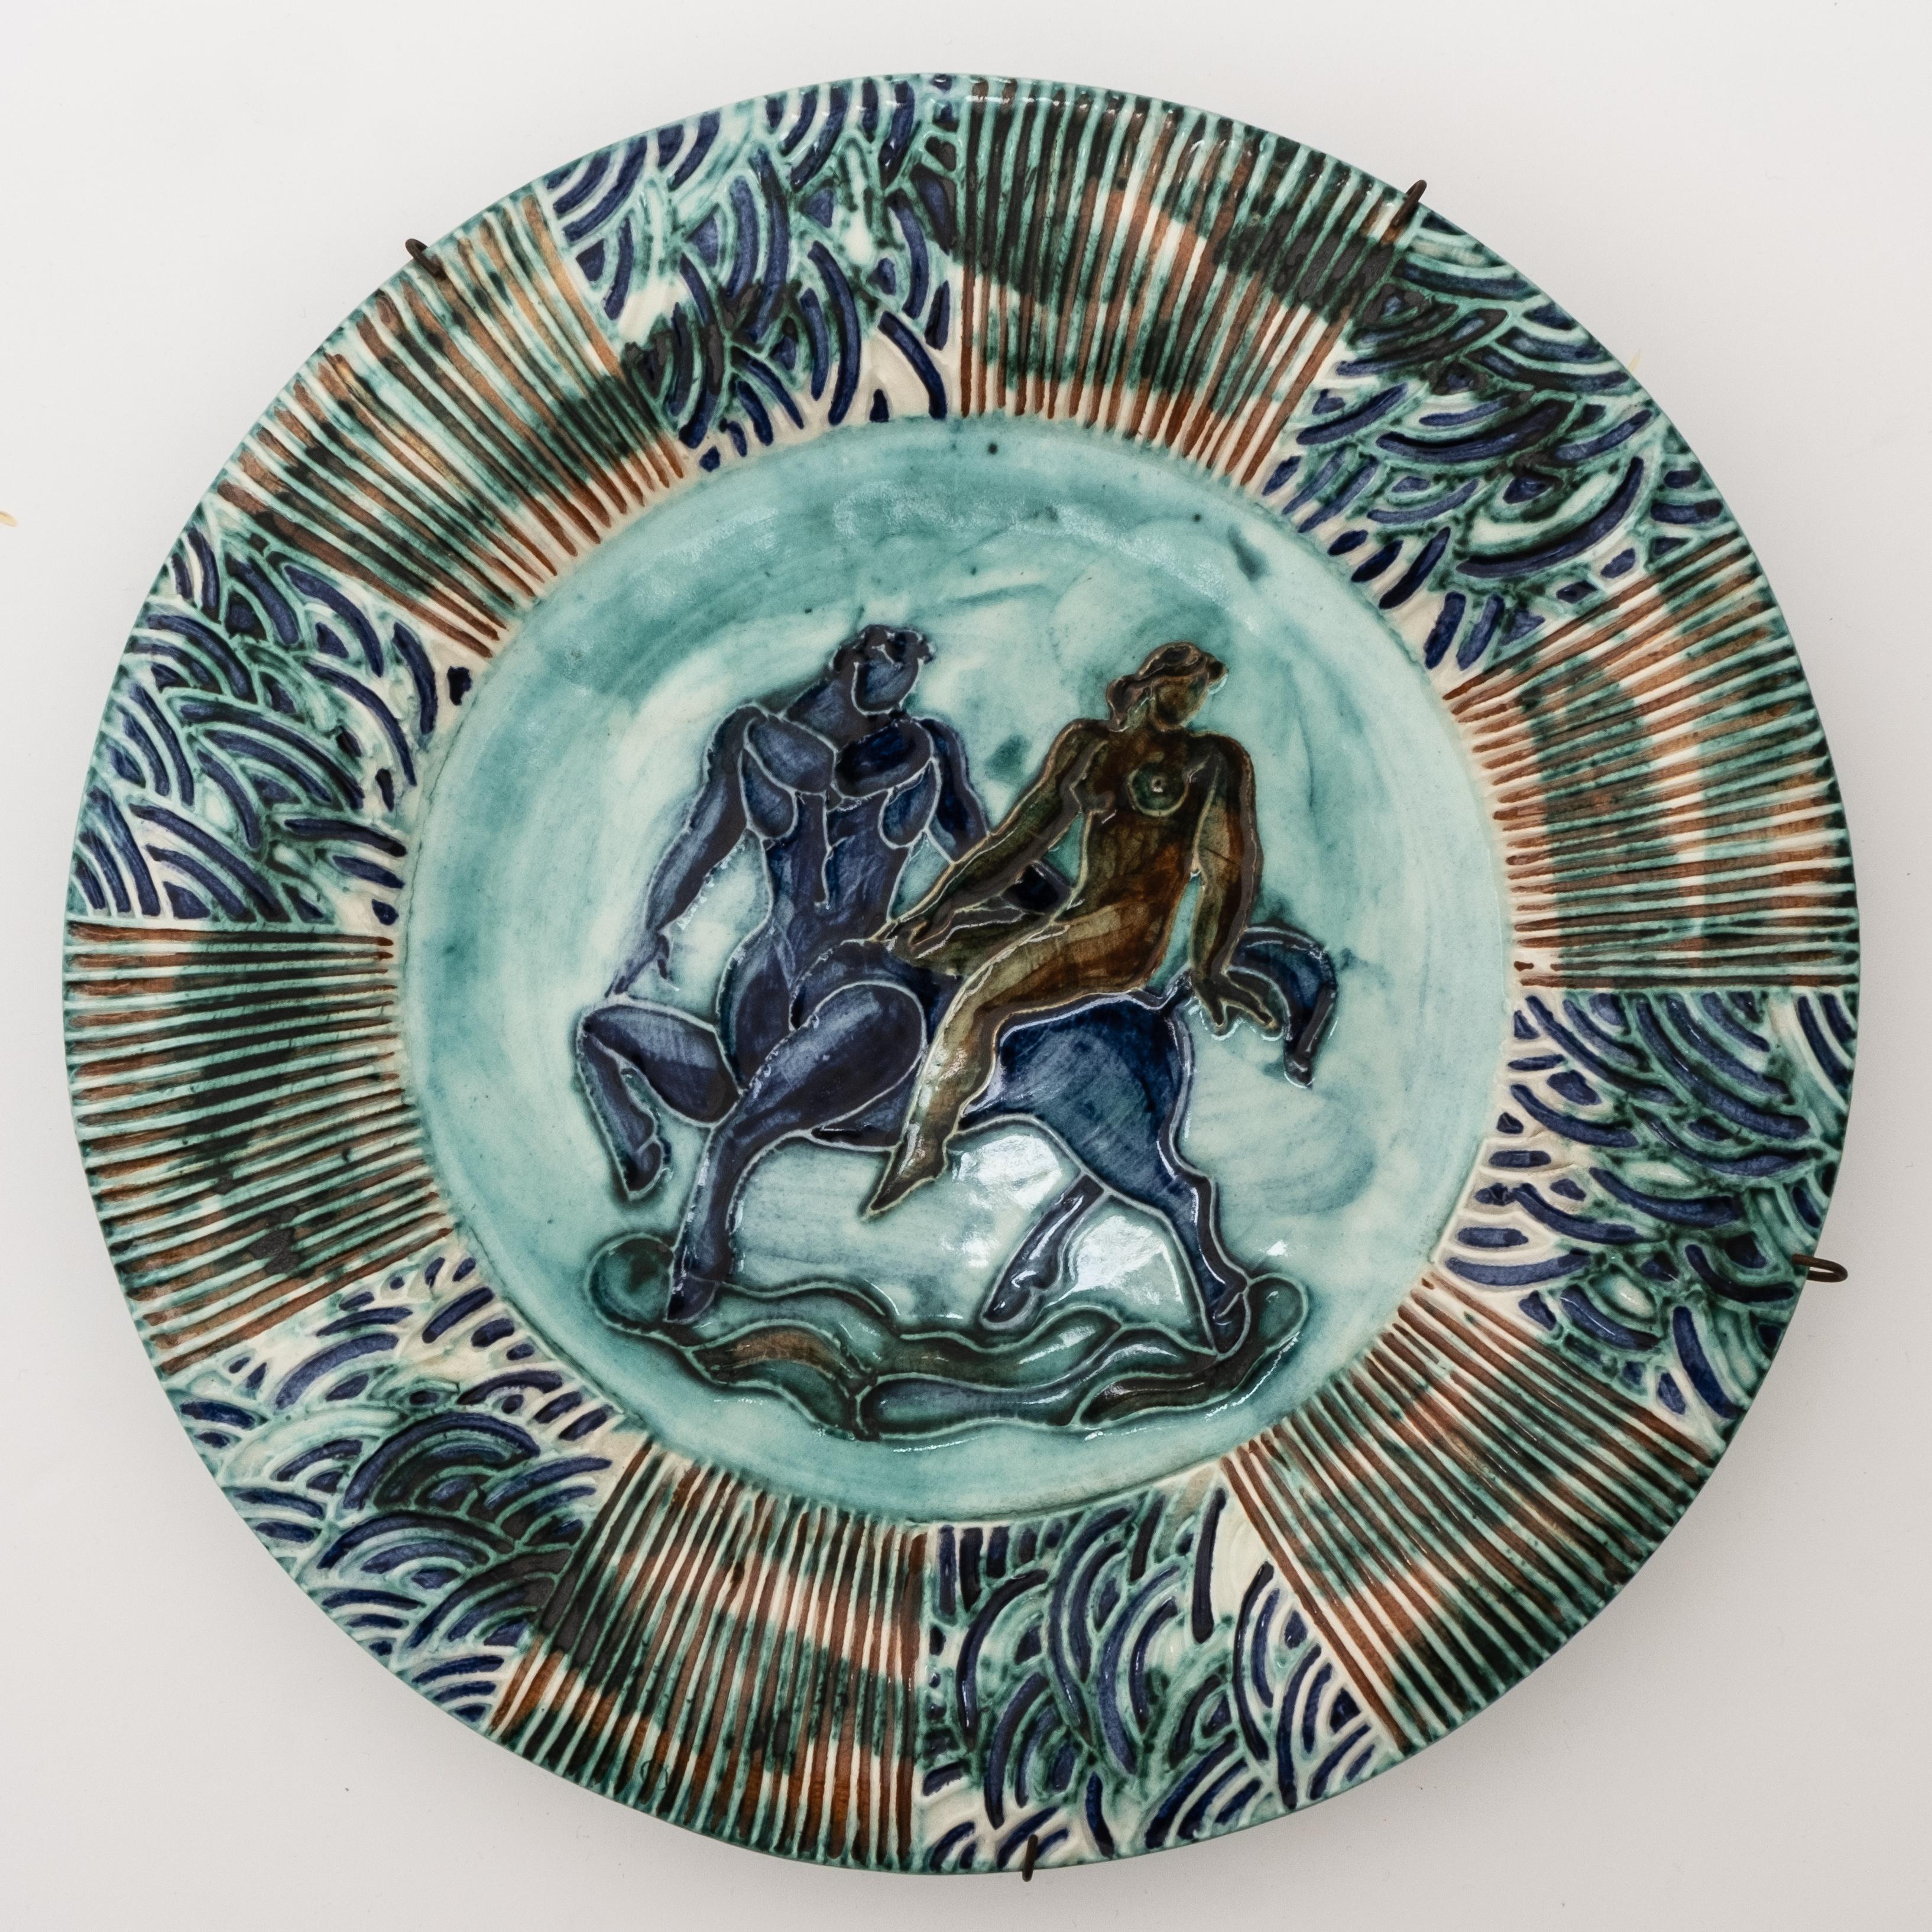 Assiette en céramique émaillée Art Déco, présentant une scène figurative centrale avec un centaure et une femme nue, entourée d'une bordure émaillée texturée et polychrome dans des tons de bleu et de vert, signée 